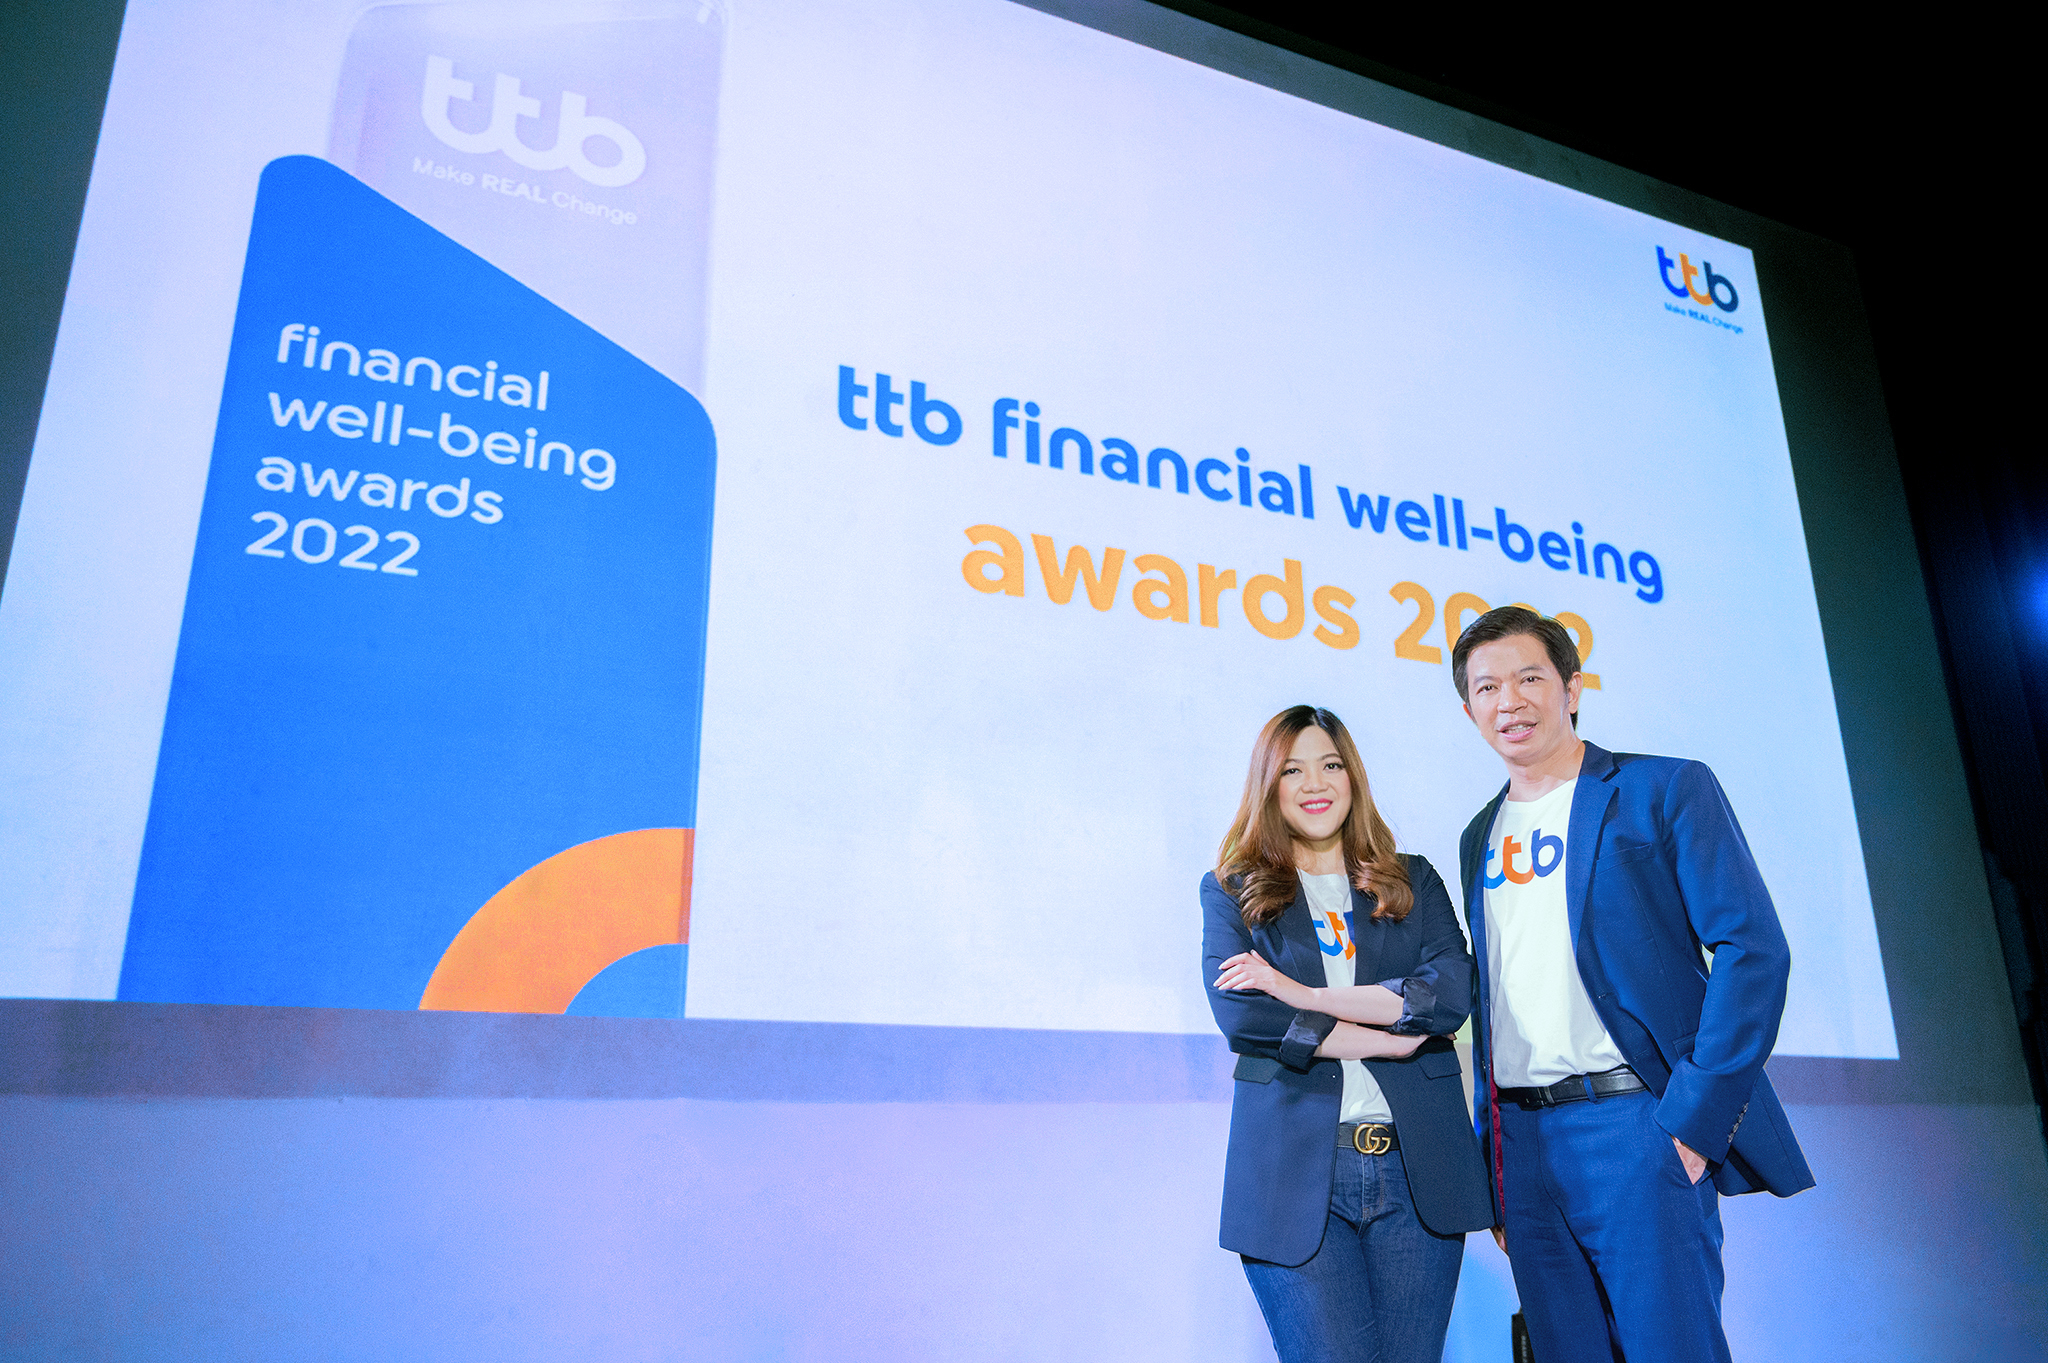 ทีเอ็มบีธนชาต มอบรางวัล ‘ttb financial well-being awards’ ให้ 10 องค์กรชั้นนำดีเด่น ที่ยกระดับสวัสดิการให้พนักงานในองค์กรมีชีวิตทางการเงินดีขึ้นรอบด้าน